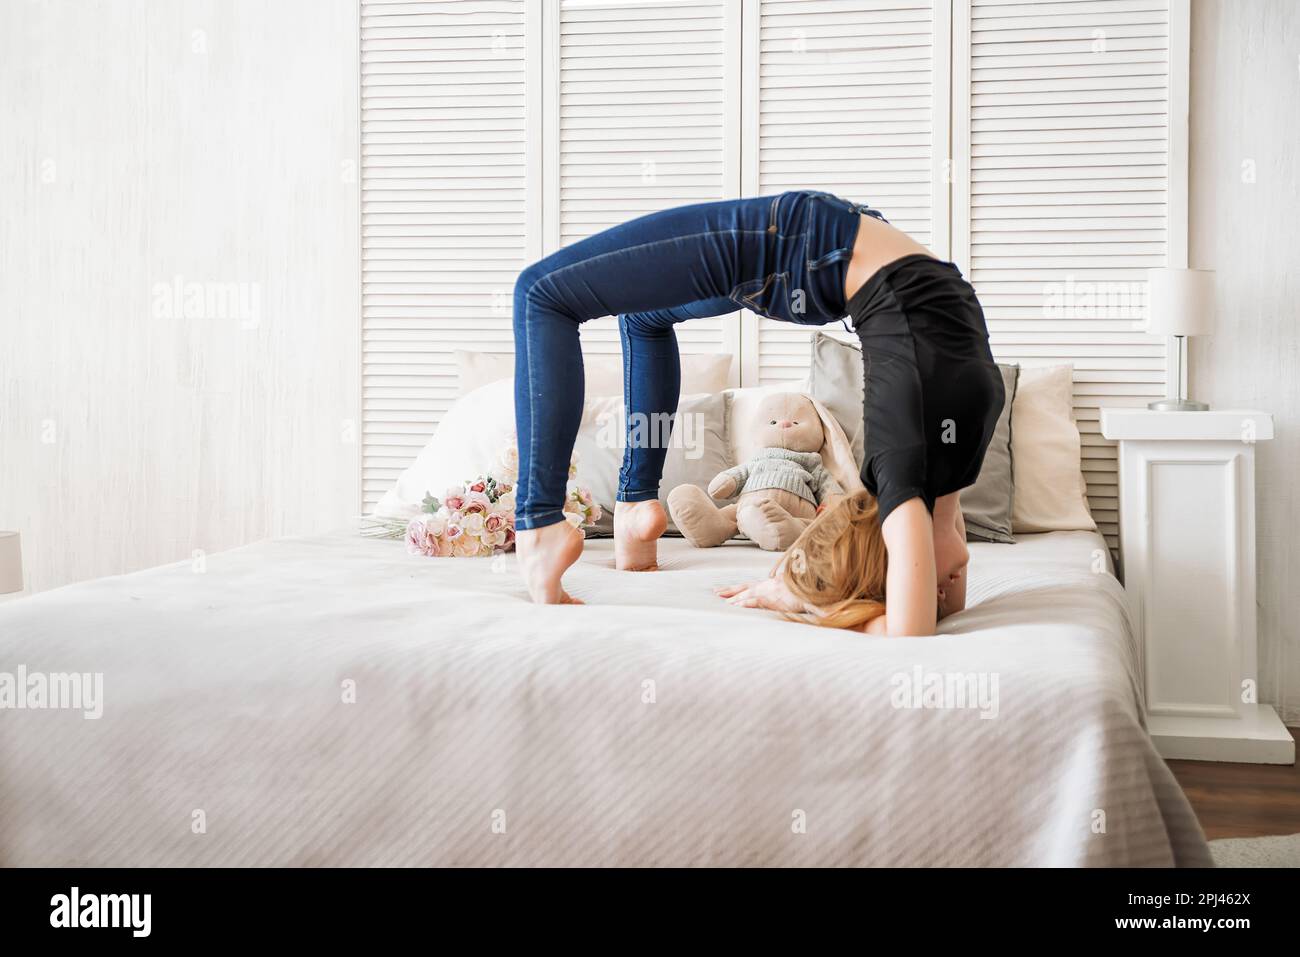 ragazza giovane che fa ginnastica su sfondo bianco, la ragazza fa un ponte di ginnastica, sul letto, nella stanza Foto Stock